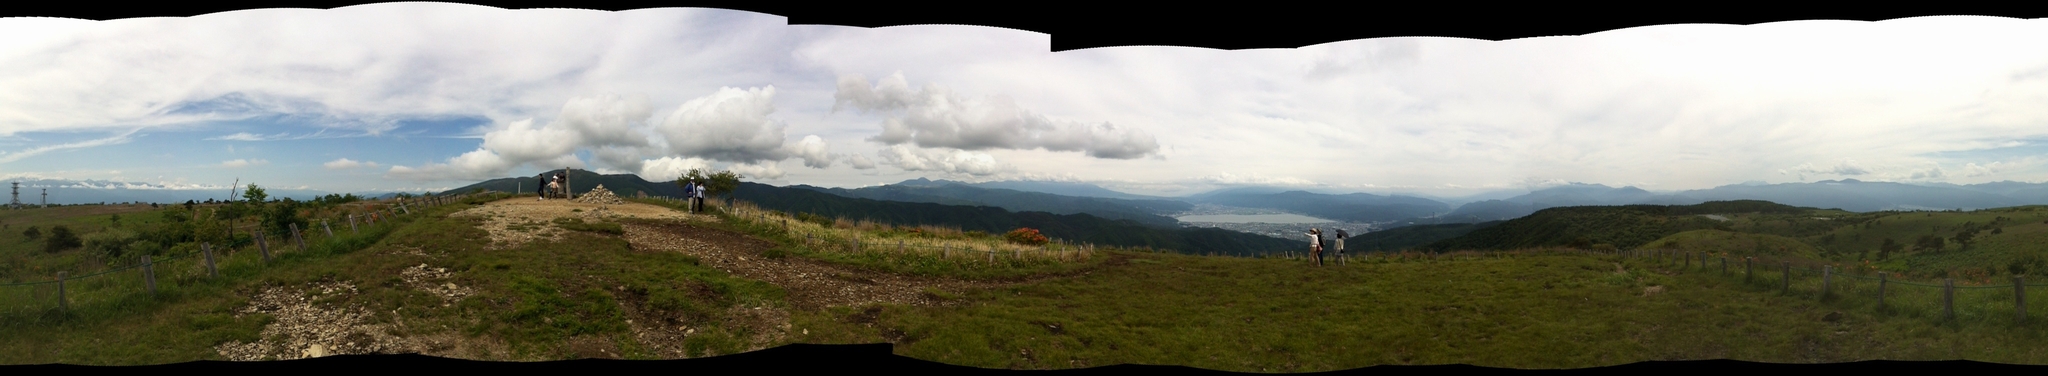 山頂からの360°パノラマ写真 『Photosynth』アプリで